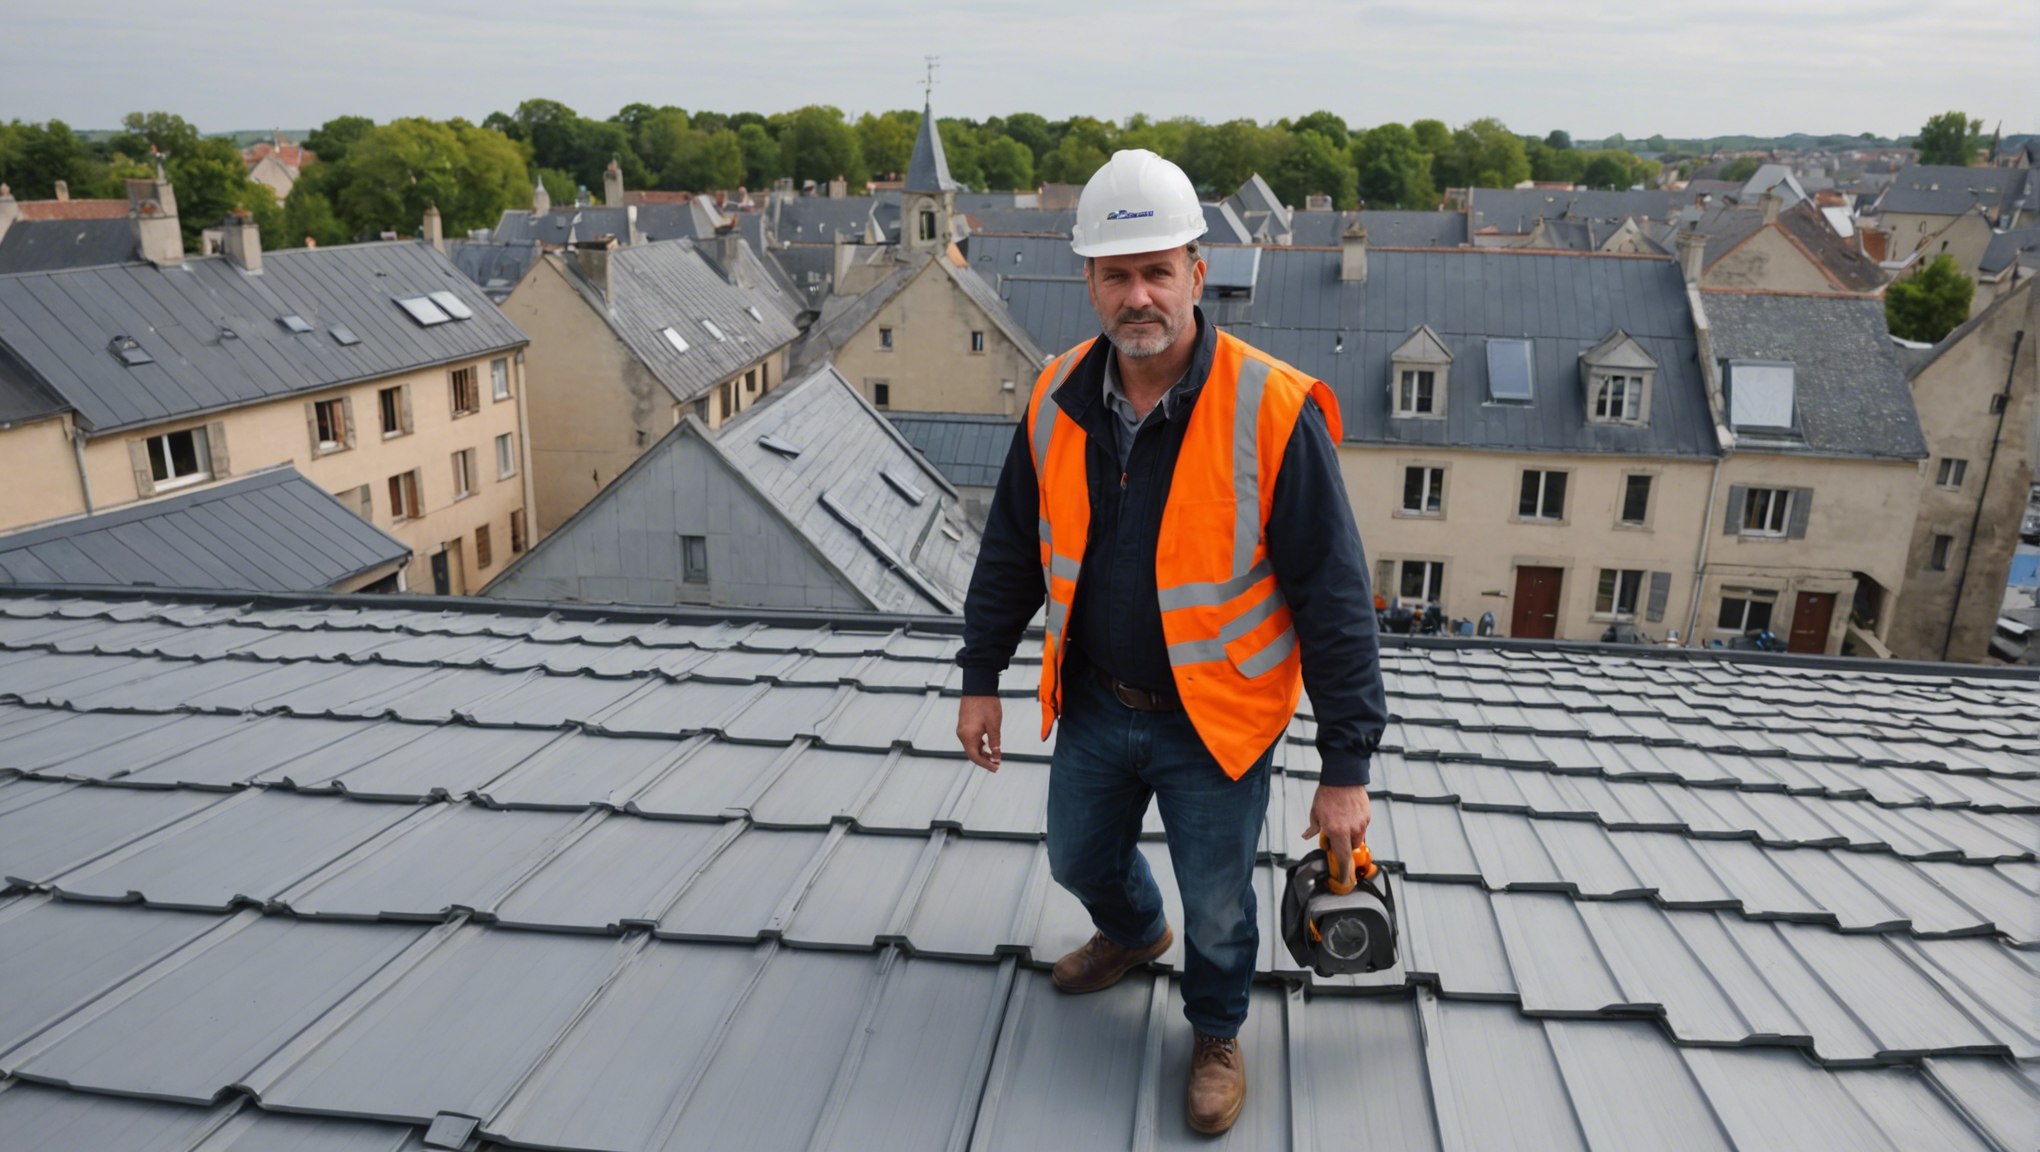 découvrez les avantages de faire appel à un couvreur zingueur de toiture à poitiers pour vos travaux de rénovation ou de construction. des professionnels qualifiés pour assurer la qualité et la durabilité de votre toit.